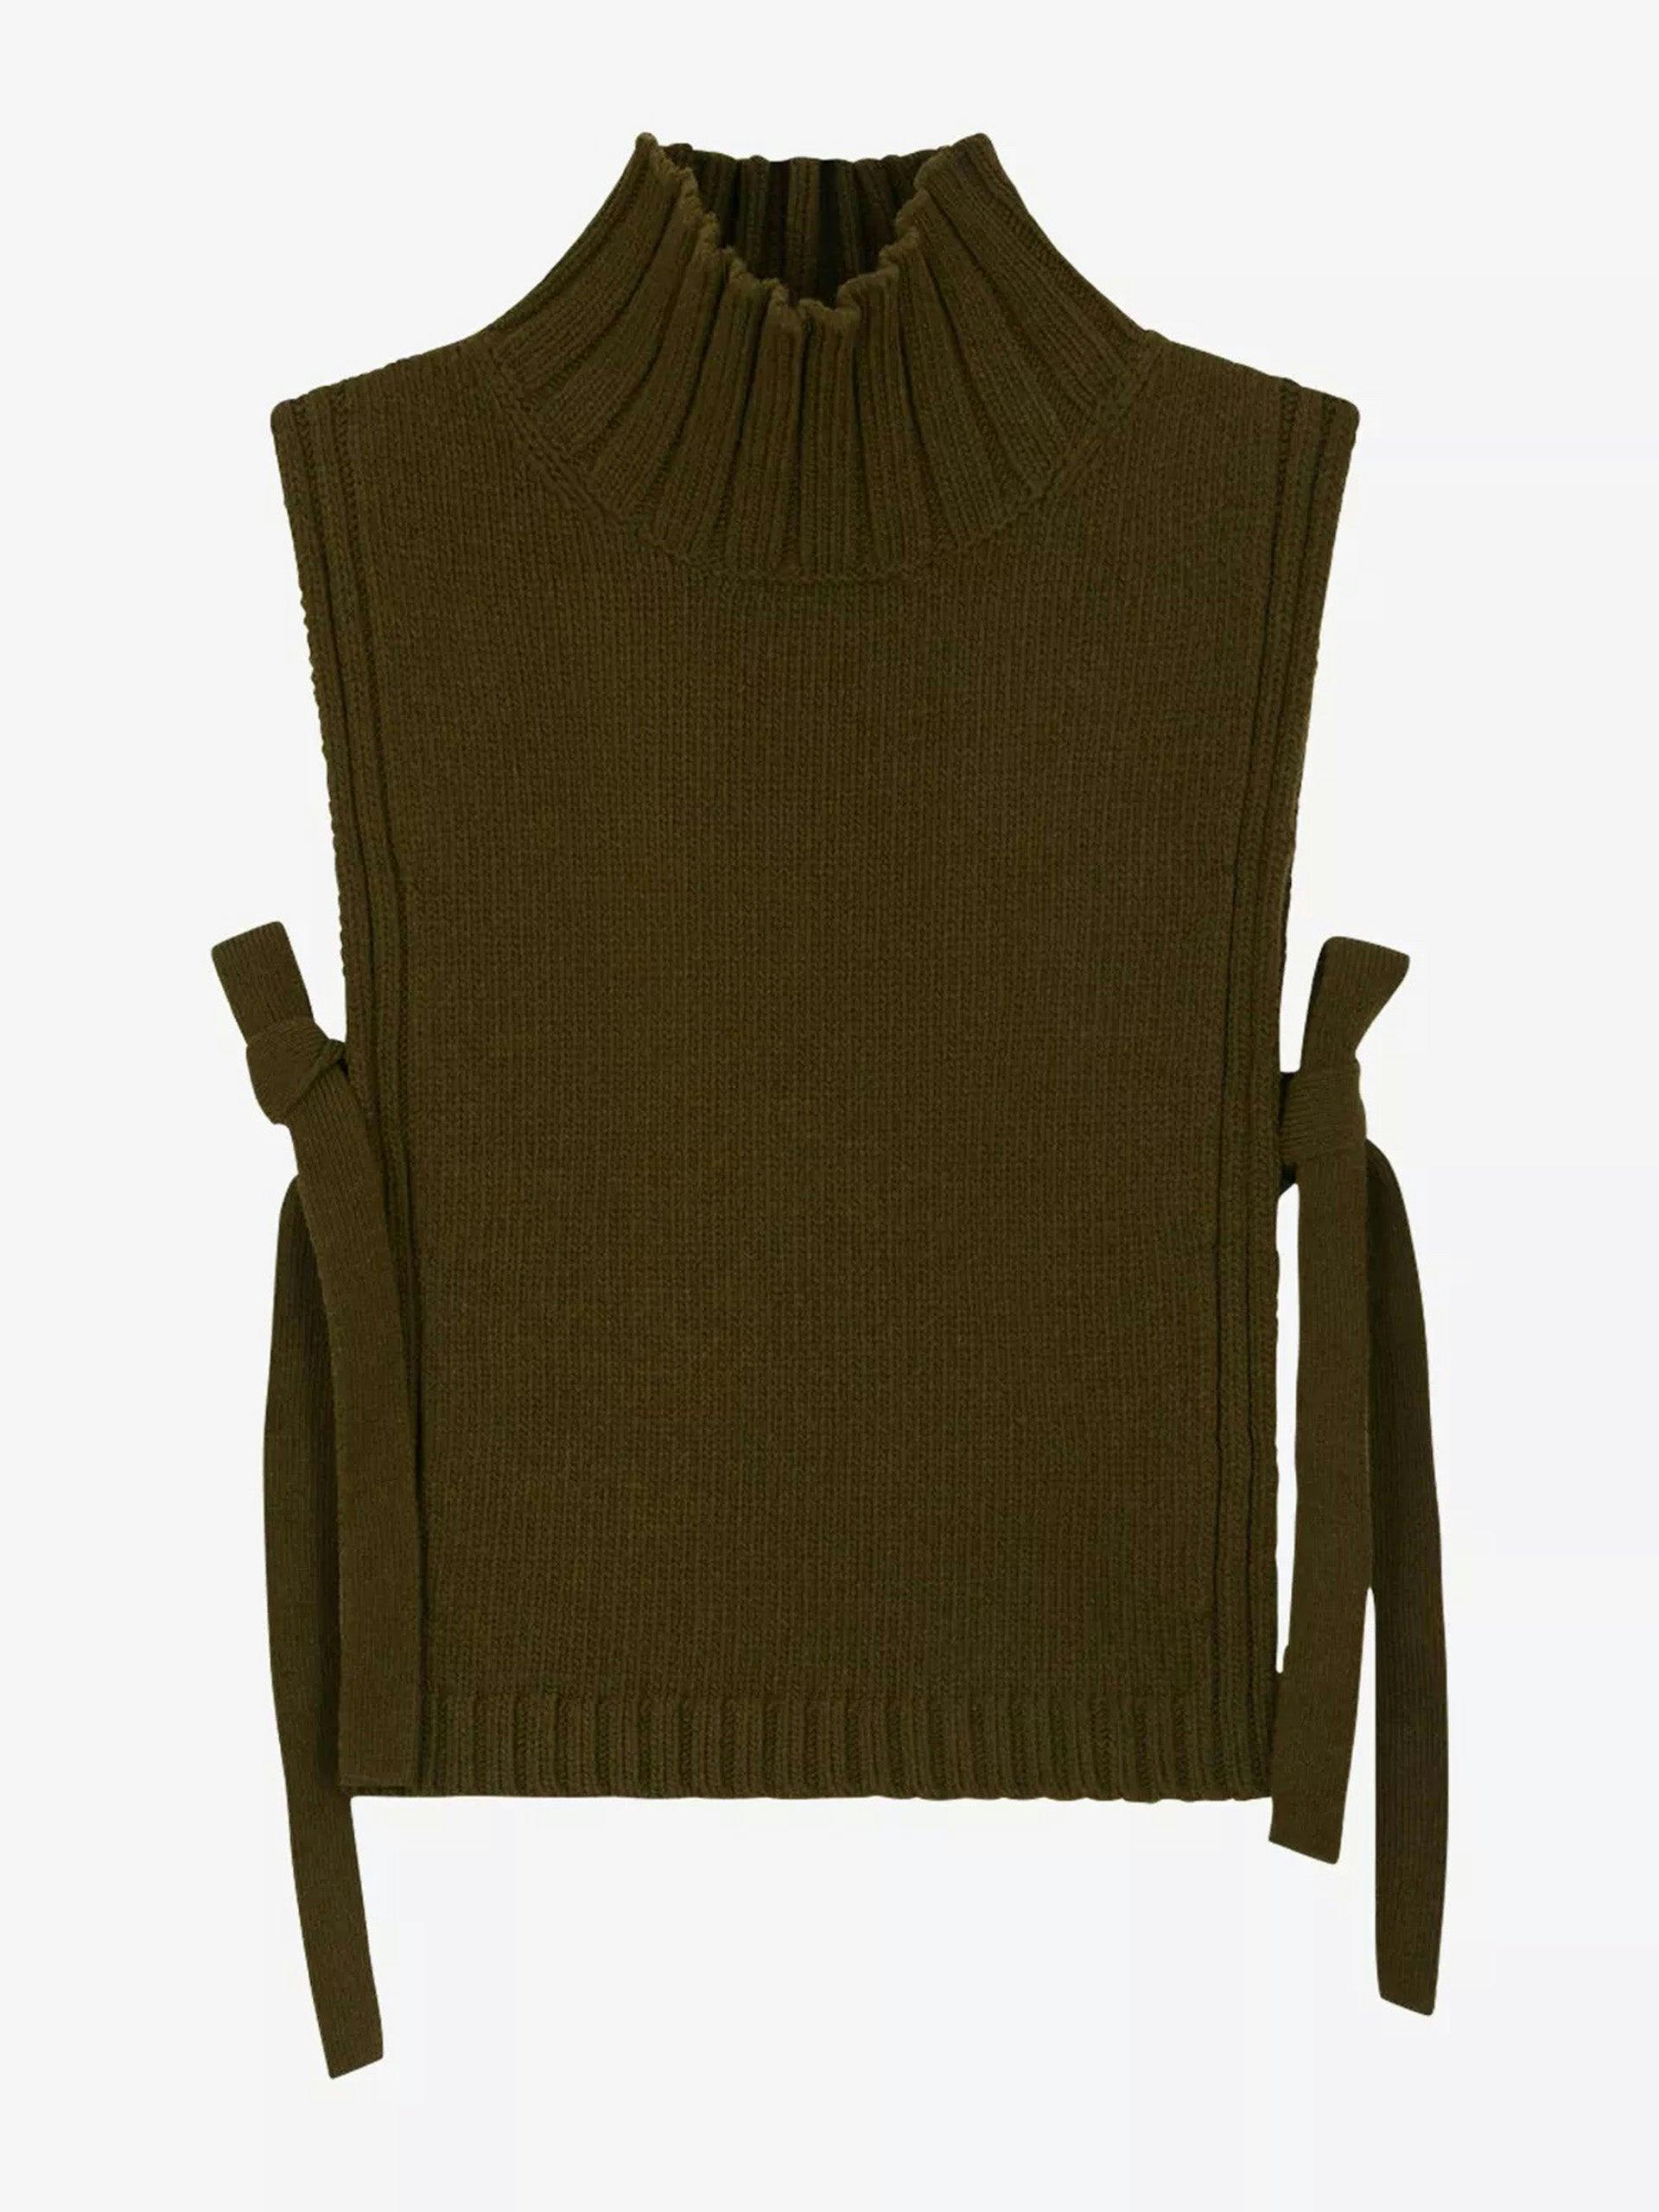 Or turtleneck self-tie wool-blend jumper